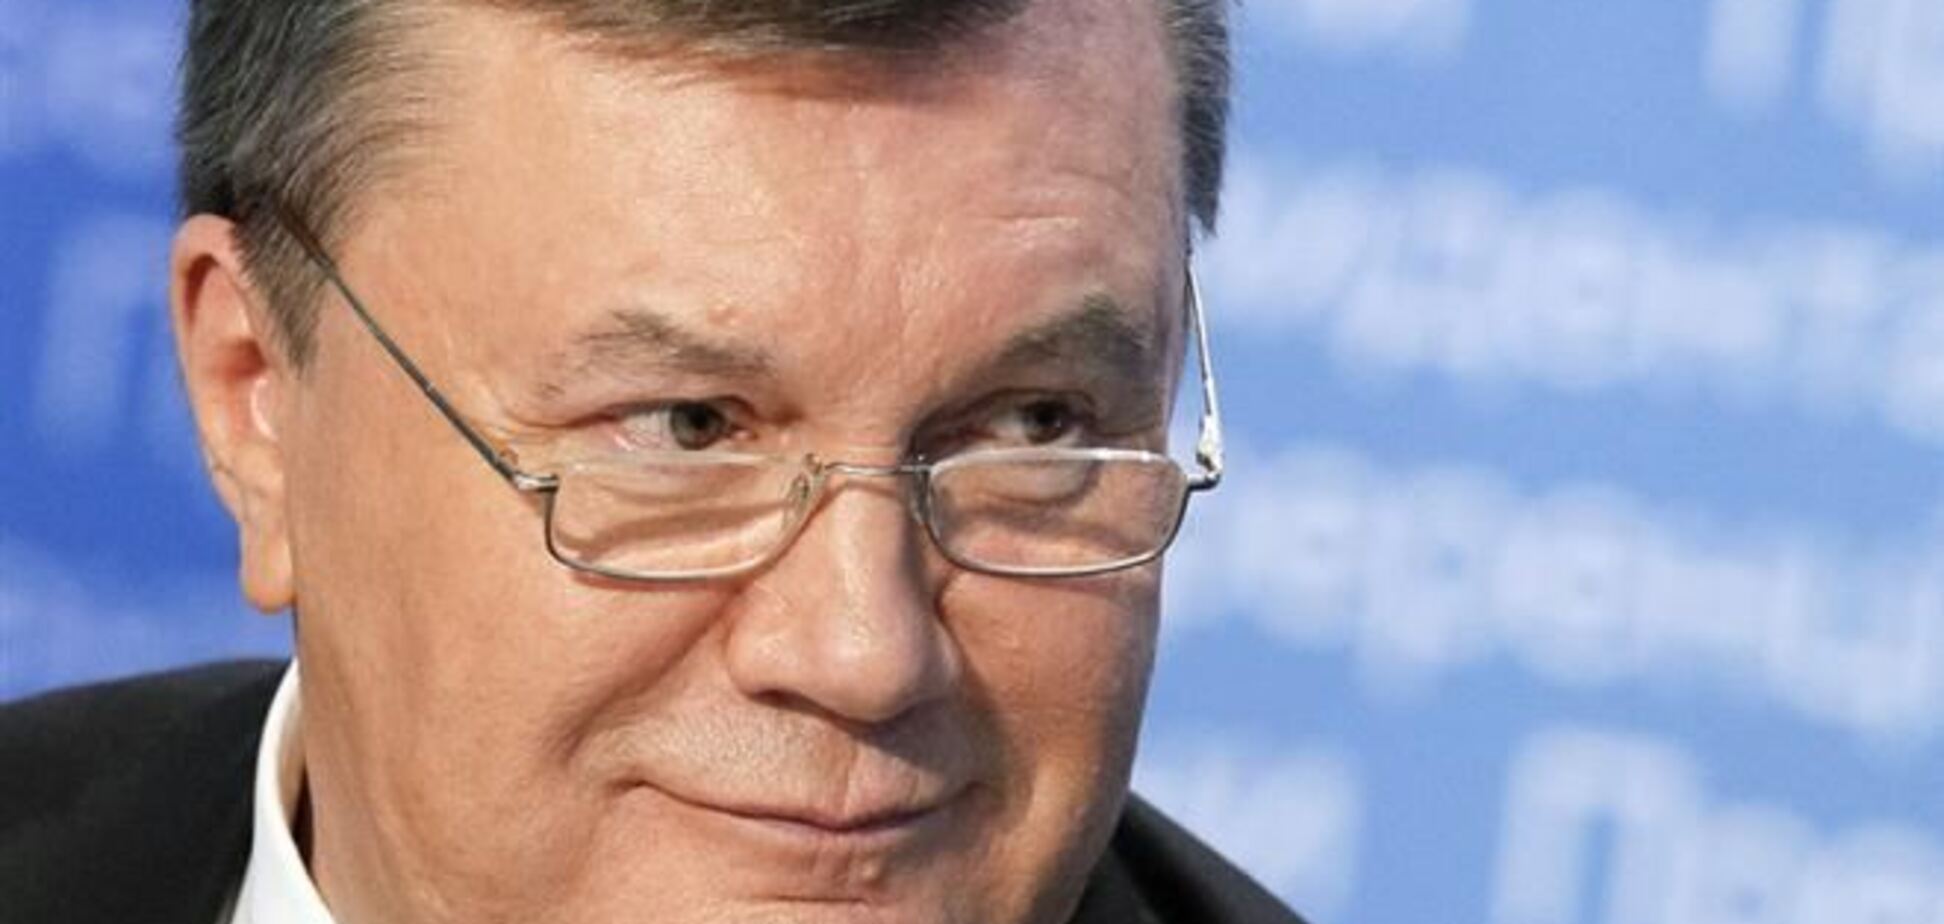 Віктор Янукович їде в Донецьку область